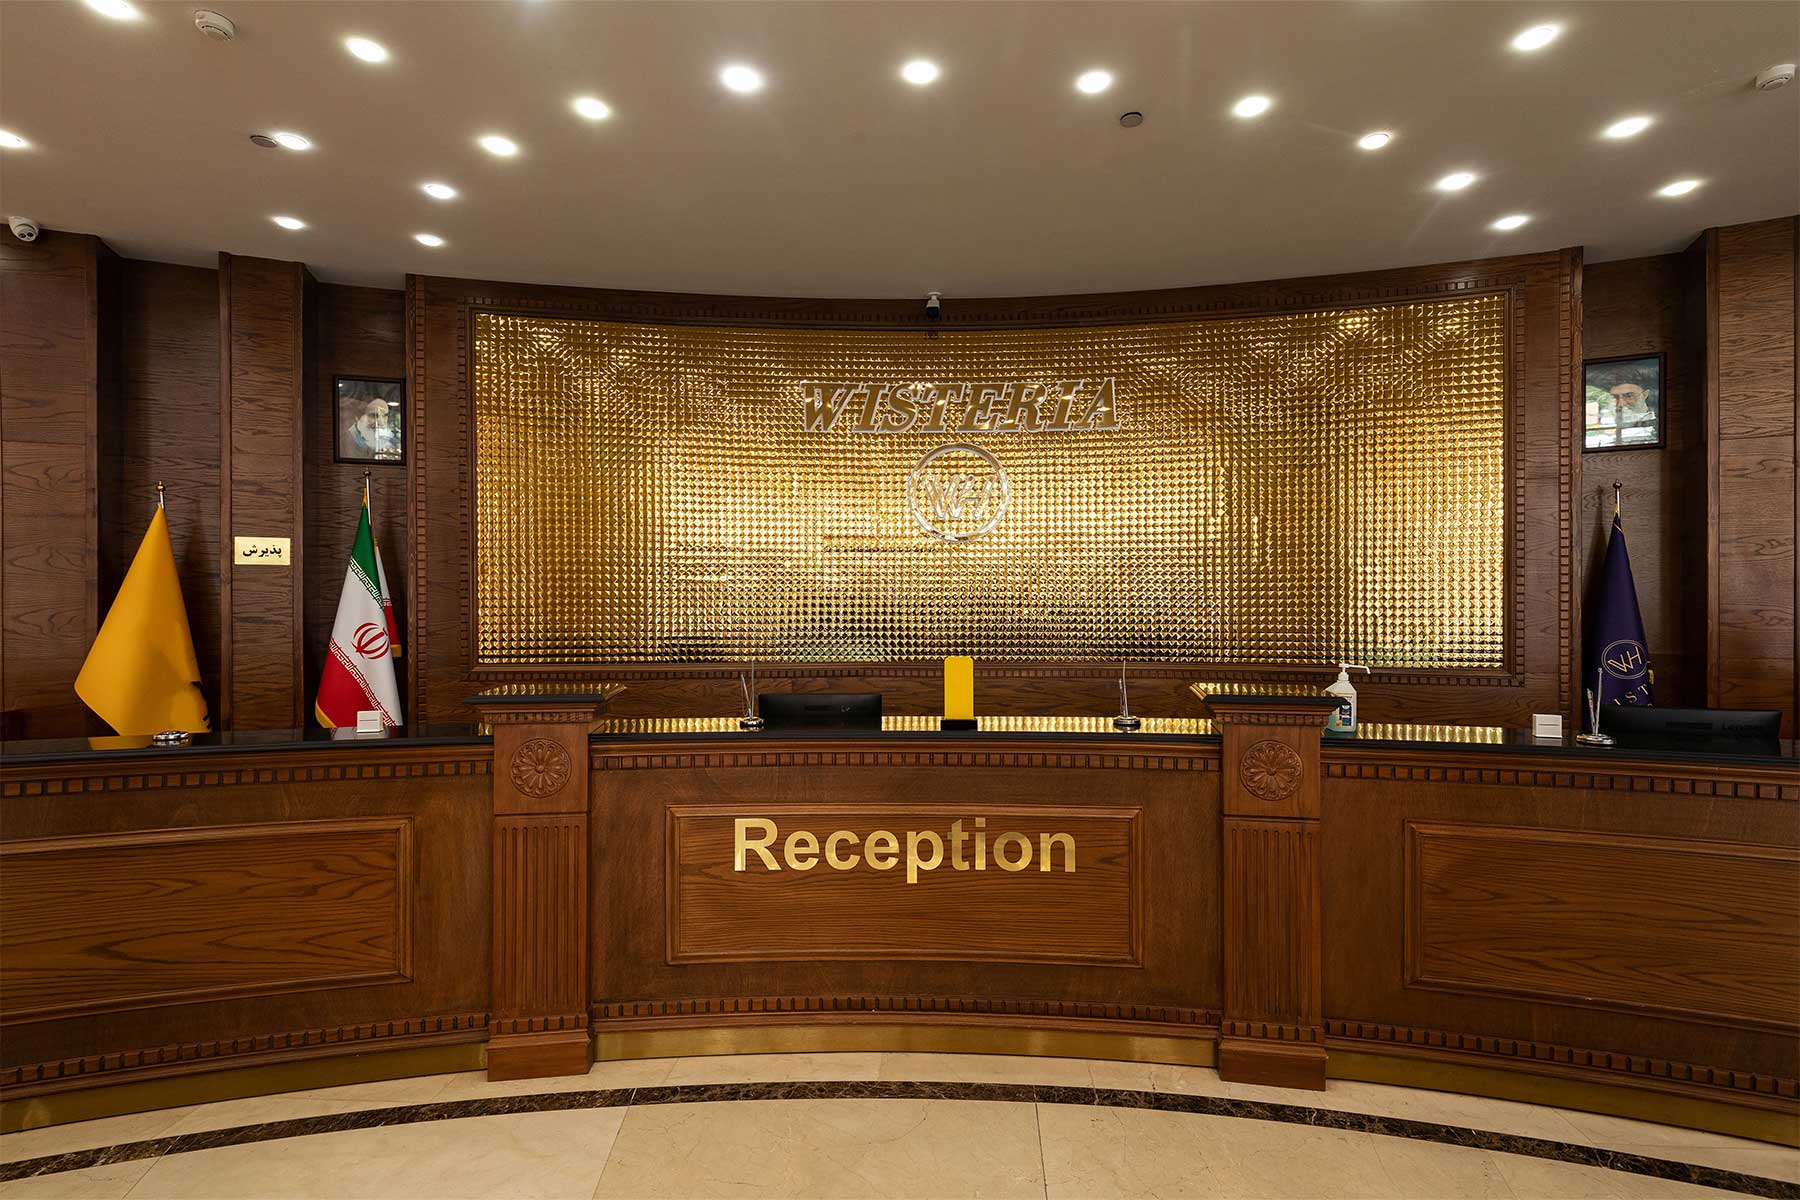 فندق ويستريا طهران